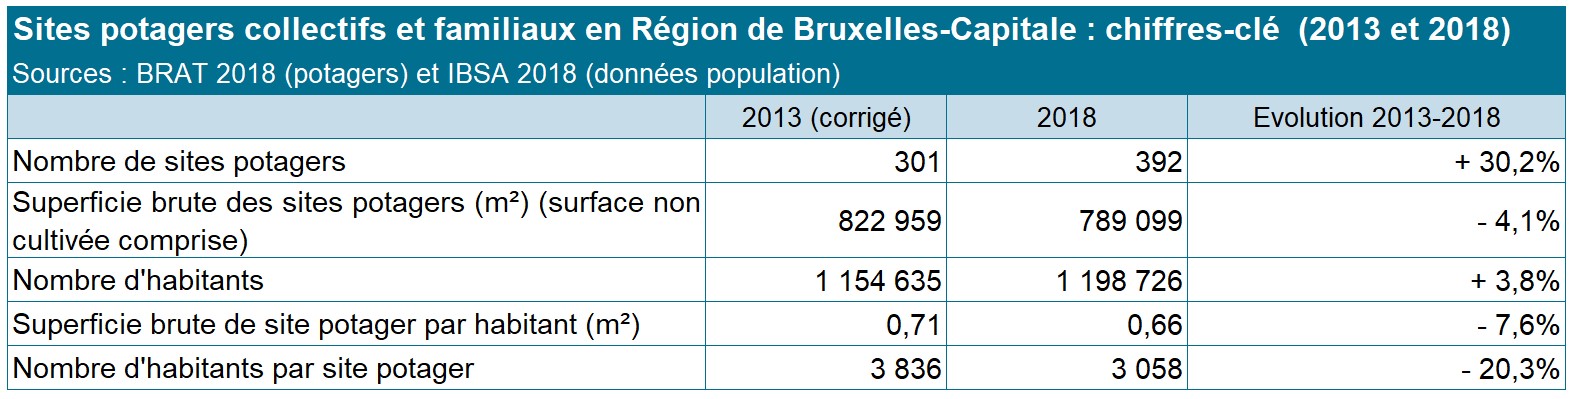 Sites potagers collectifs et familiaux en région de Bruxelles-capitales